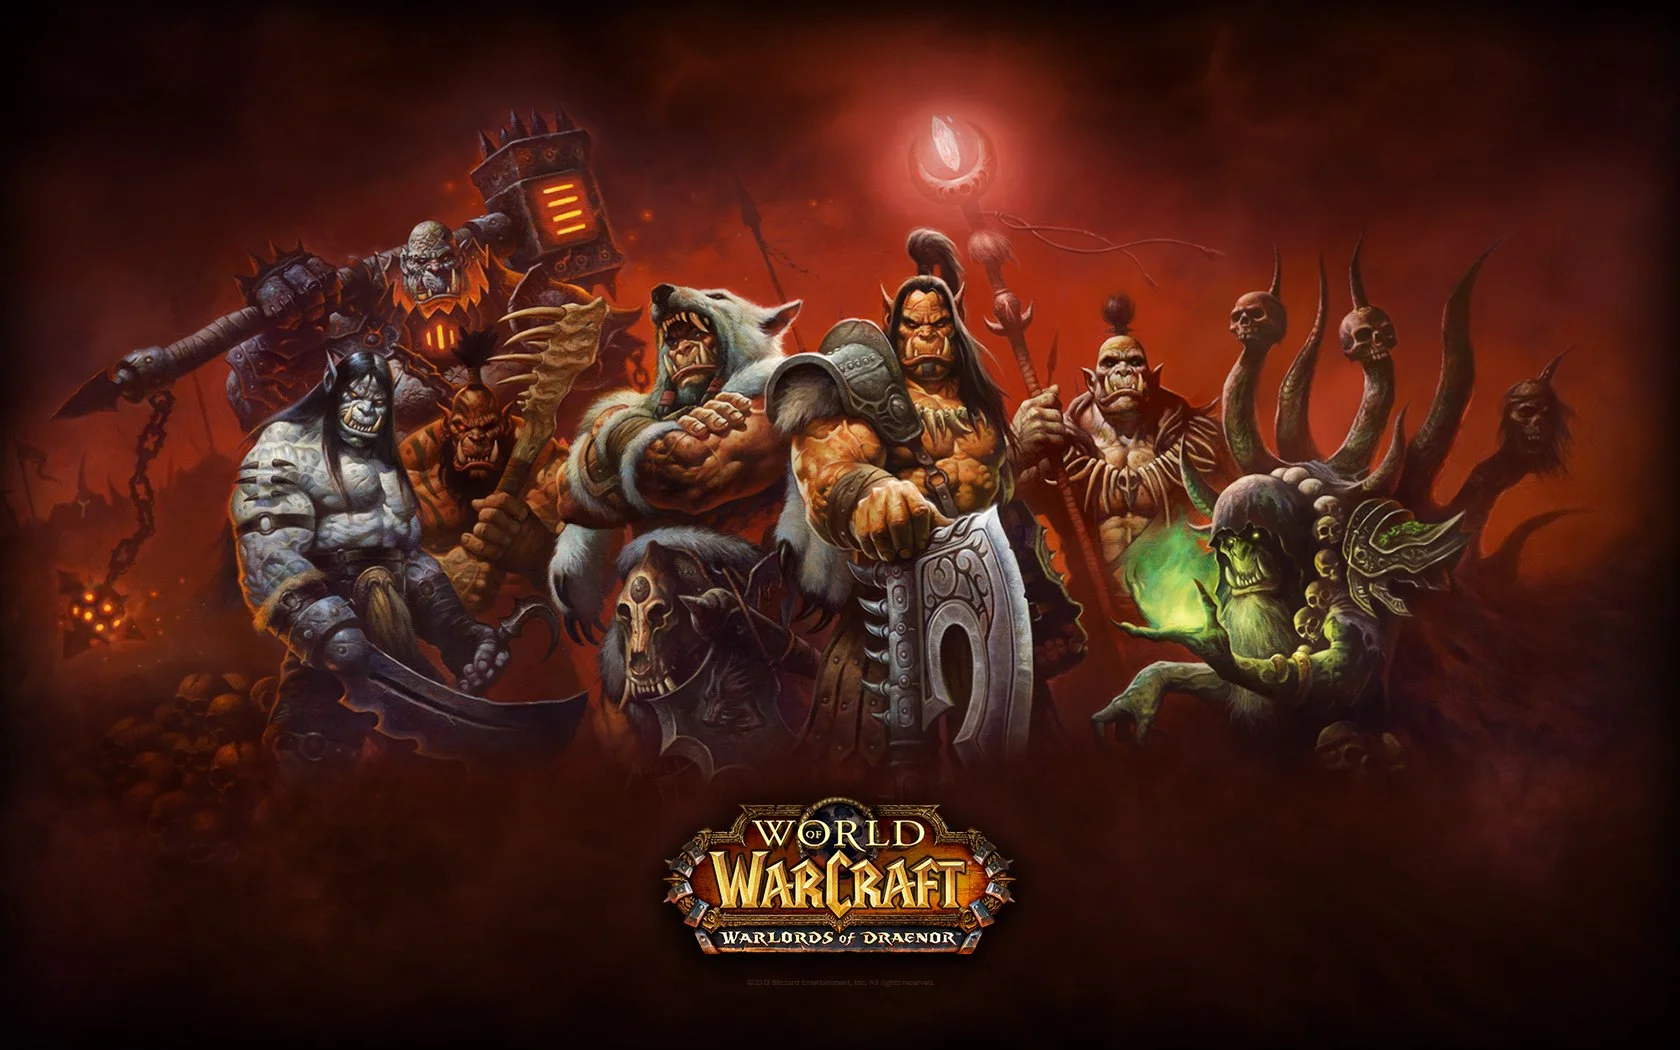 Русскоязычных игроков пустят на европейские серверы World of Warcraft - фото 1